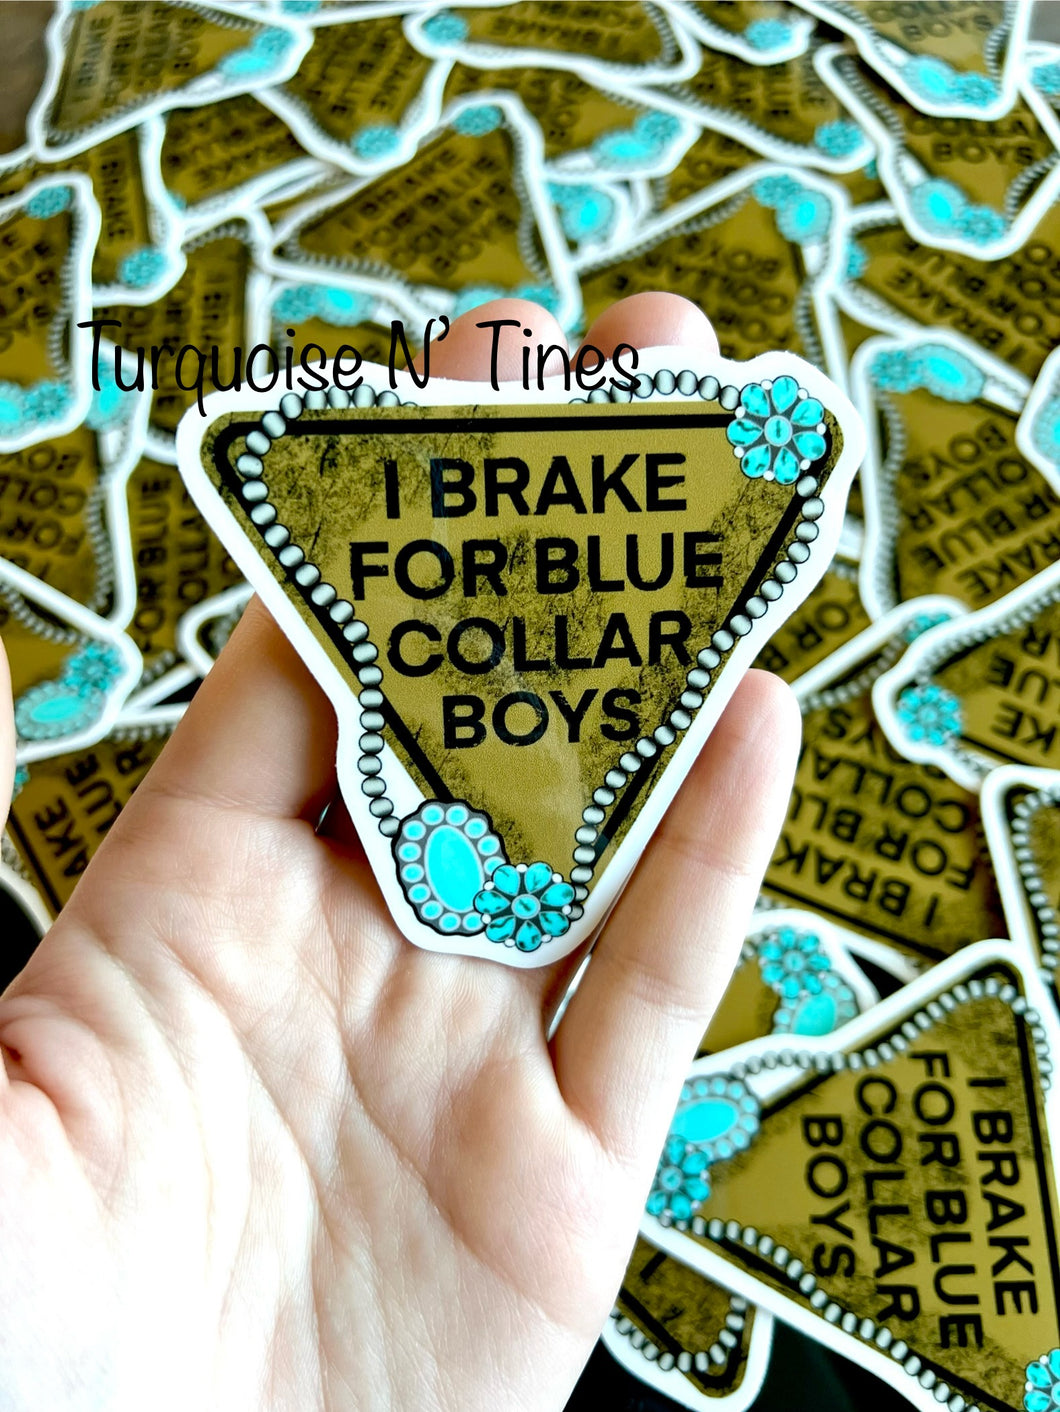 Blue Collar Sticker